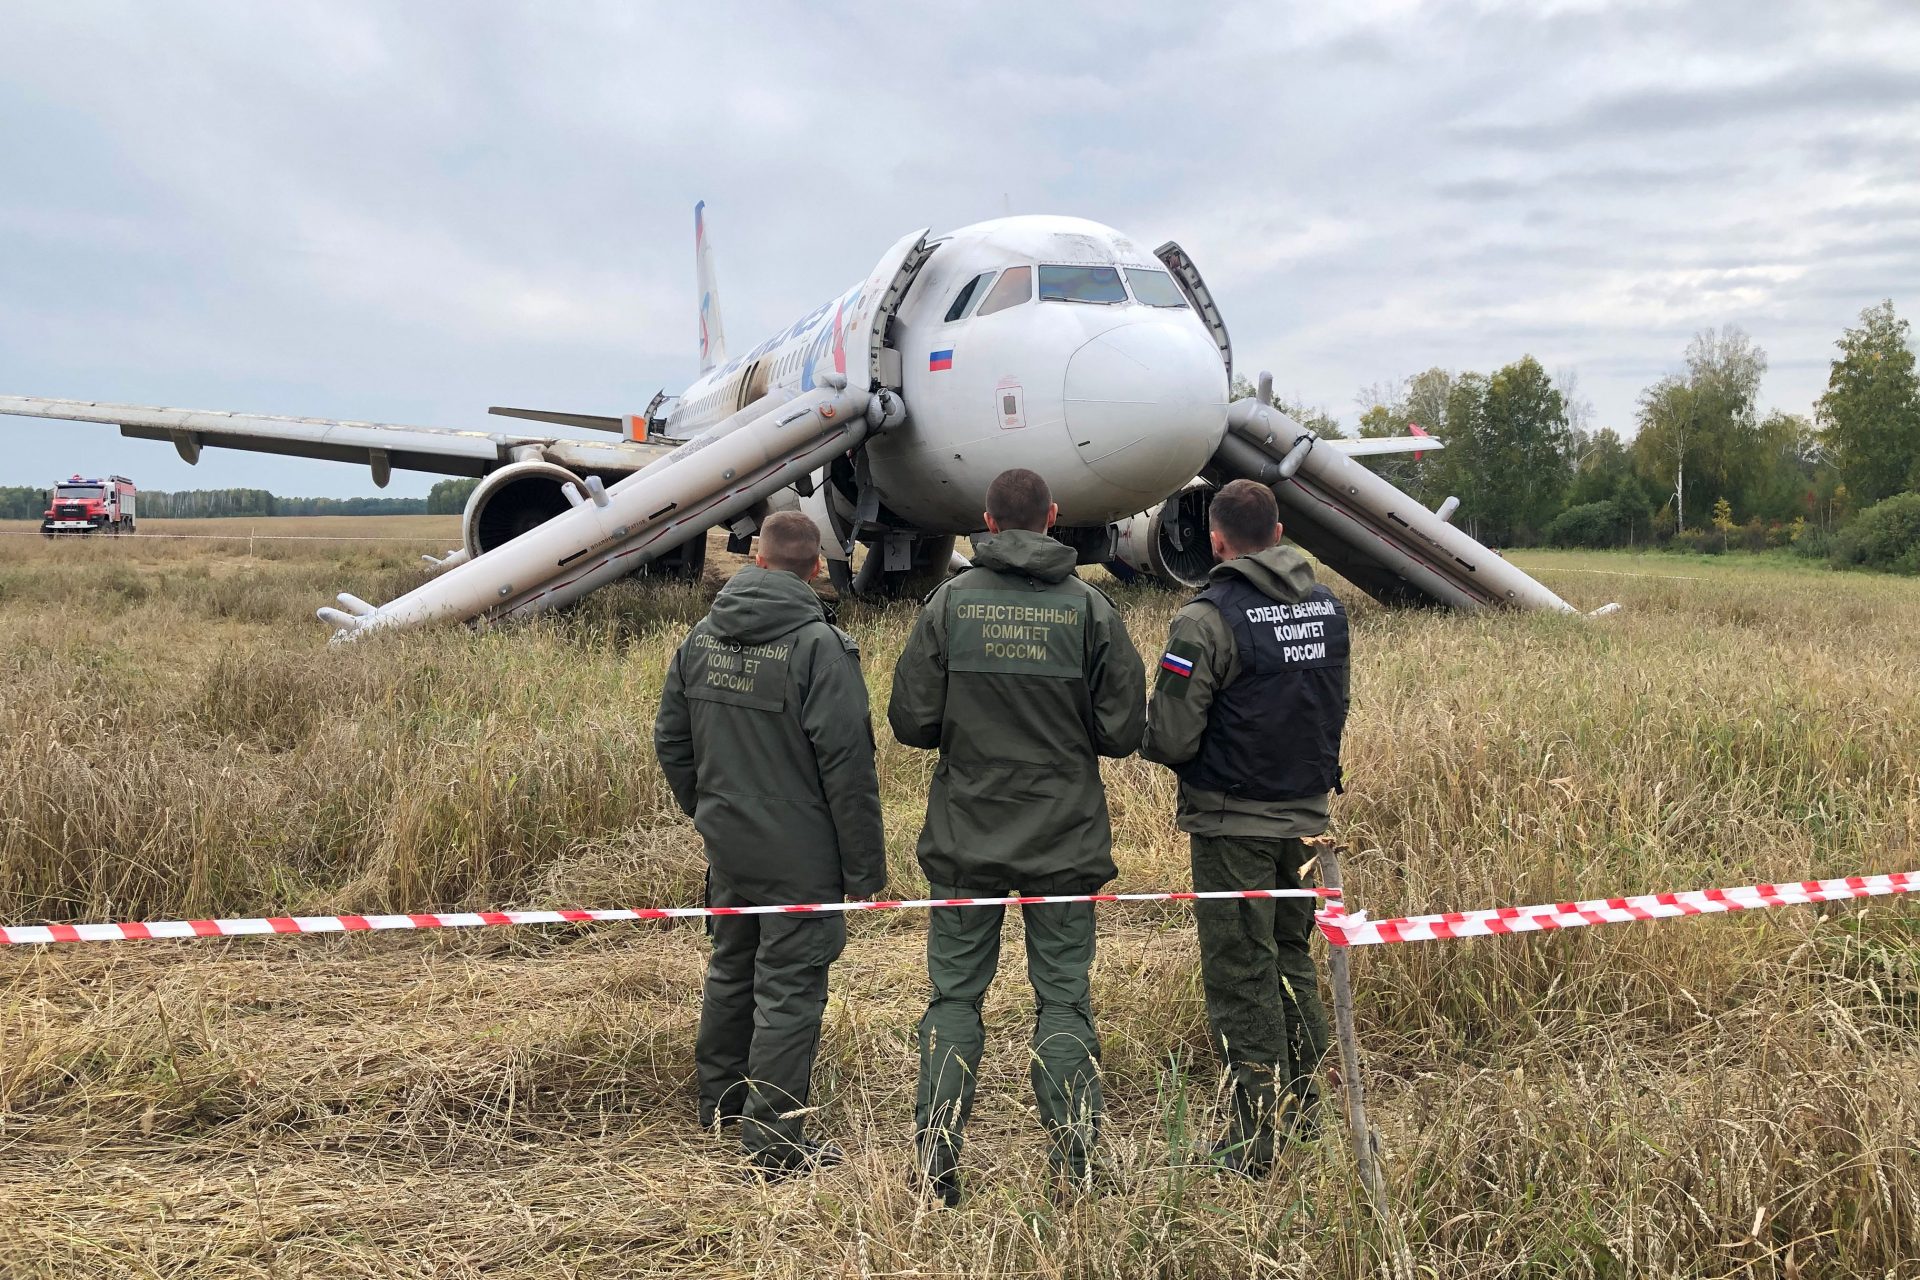 Compagnie aeree russe di fronte al collasso: le rivelazioni da documenti trapelati